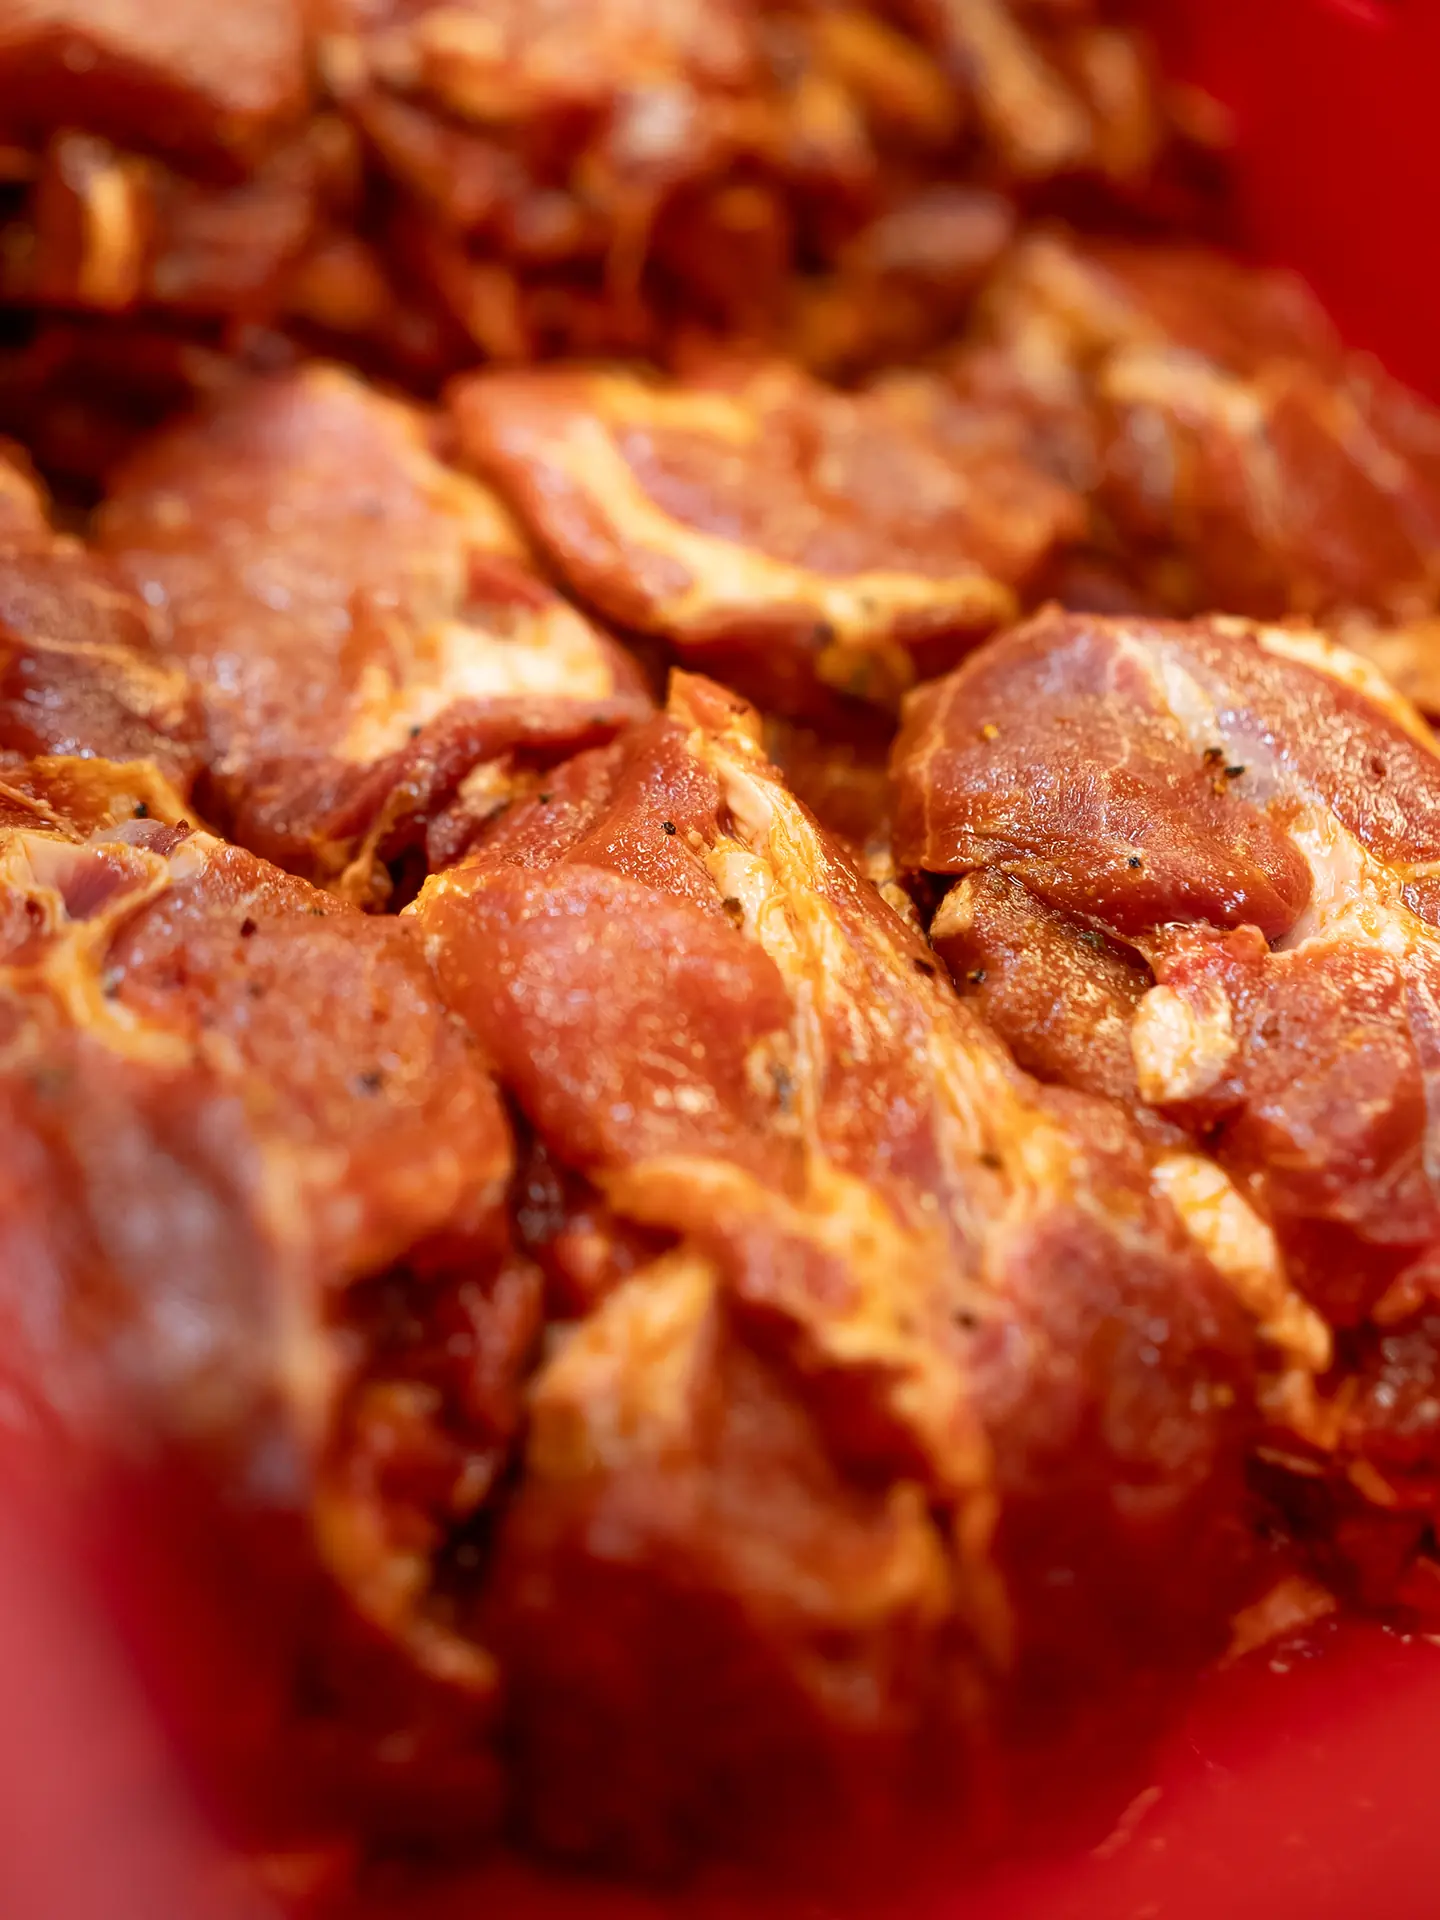 Eine Auswahl an Bio-Fleischstücken, darunter Braten, Keulen und Burger-Patties, auf einem Holzbrett, garniert mit Kräutern und Gewürzen.